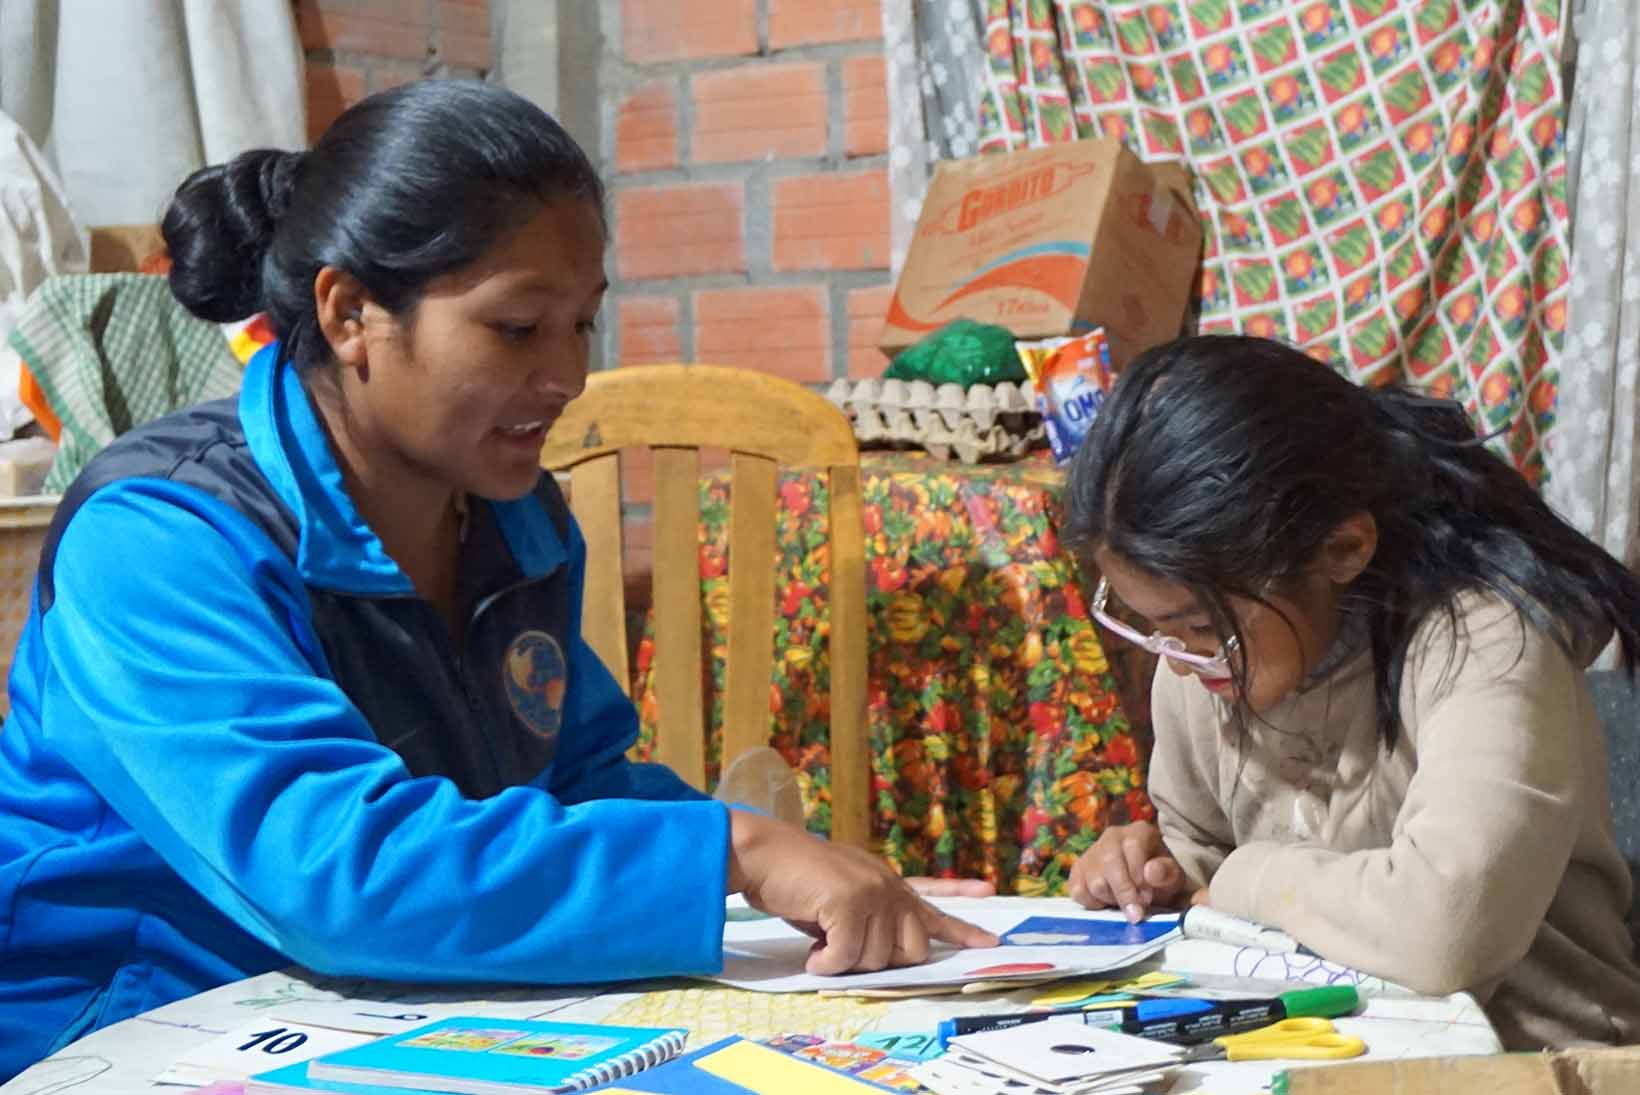 Una ragazza boliviana con disturbi di apprendimento fa i compiti al tavolo con una donna.